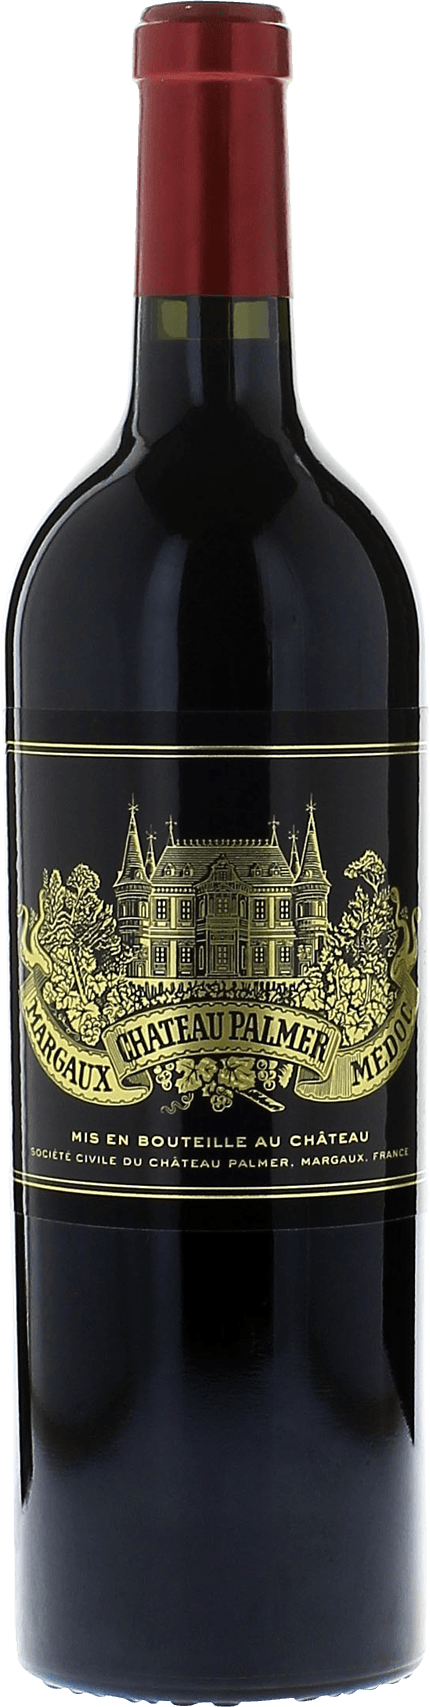 Palmer (ex-chteau septembre 2020) 2010 3me Grand cru class Margaux, Bordeaux rouge